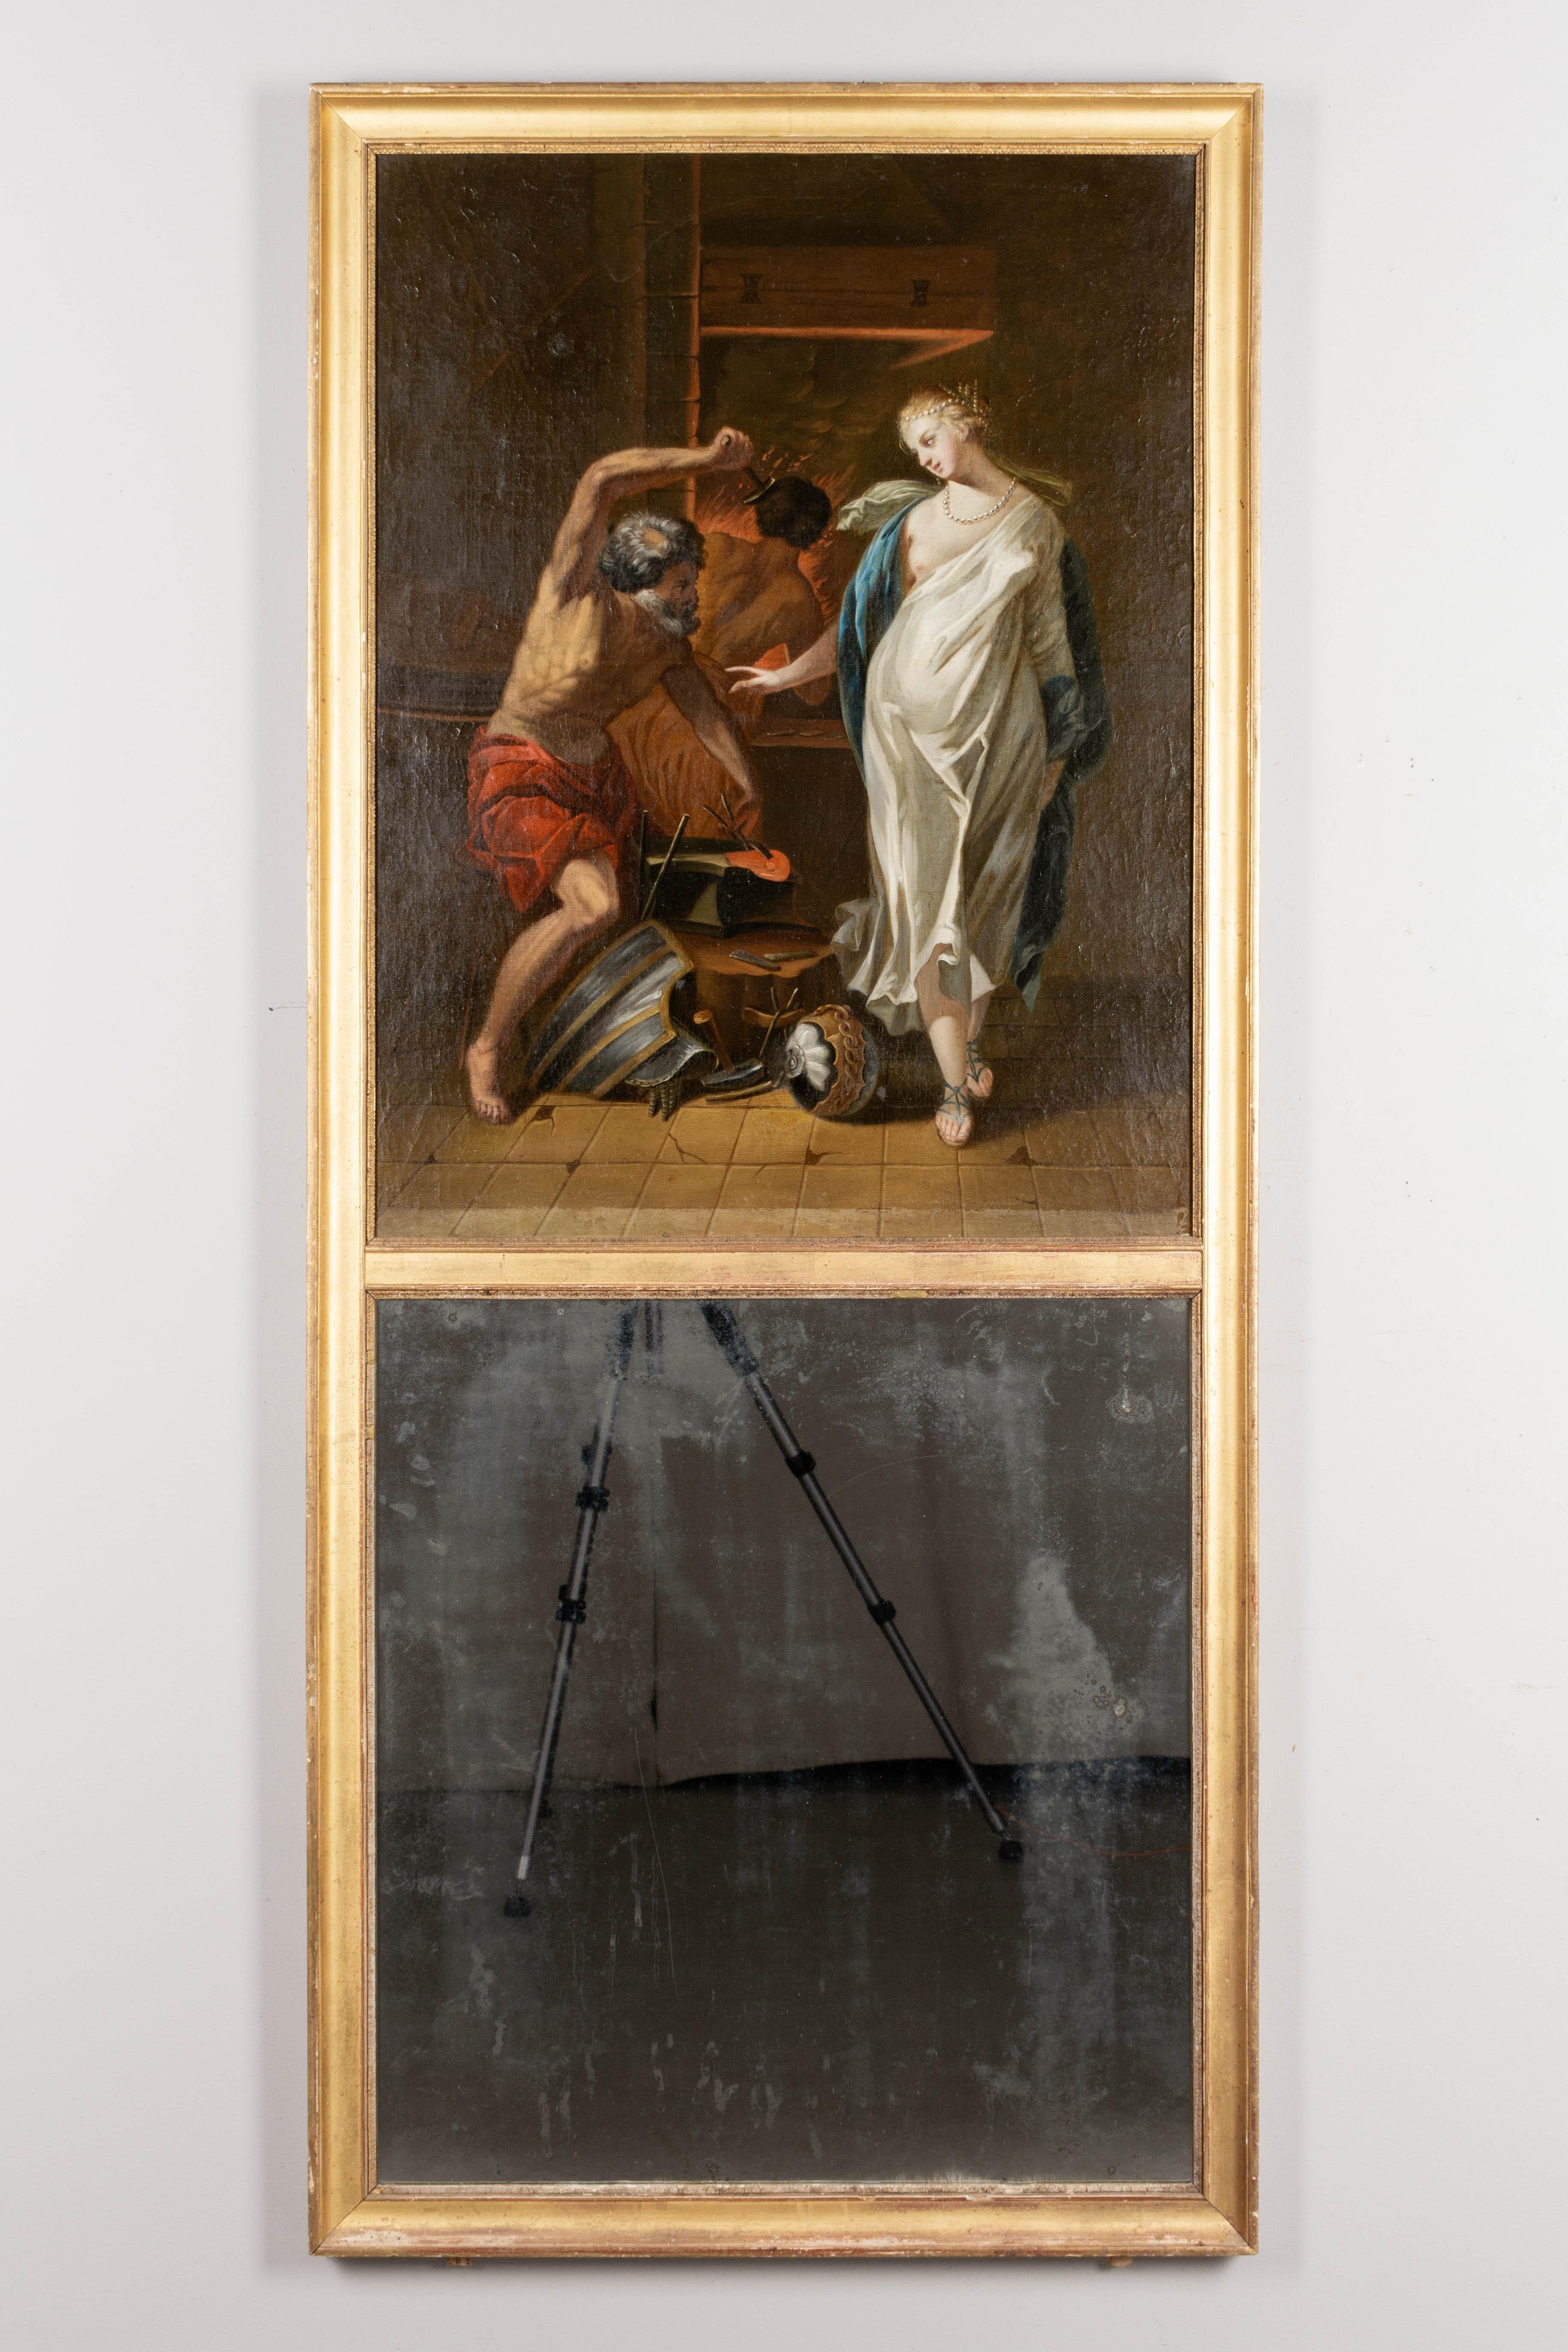 Ein französischer Trumeau-Spiegel aus dem 18. Jahrhundert im Stil Ludwigs XVI. mit einem großen Gemälde, das Venus in der Schmiede des Vulkan darstellt. Hochwertiges Öl auf Leinwand mit leuchtenden Farben. Der vergoldete Holzrahmen ist in gutem